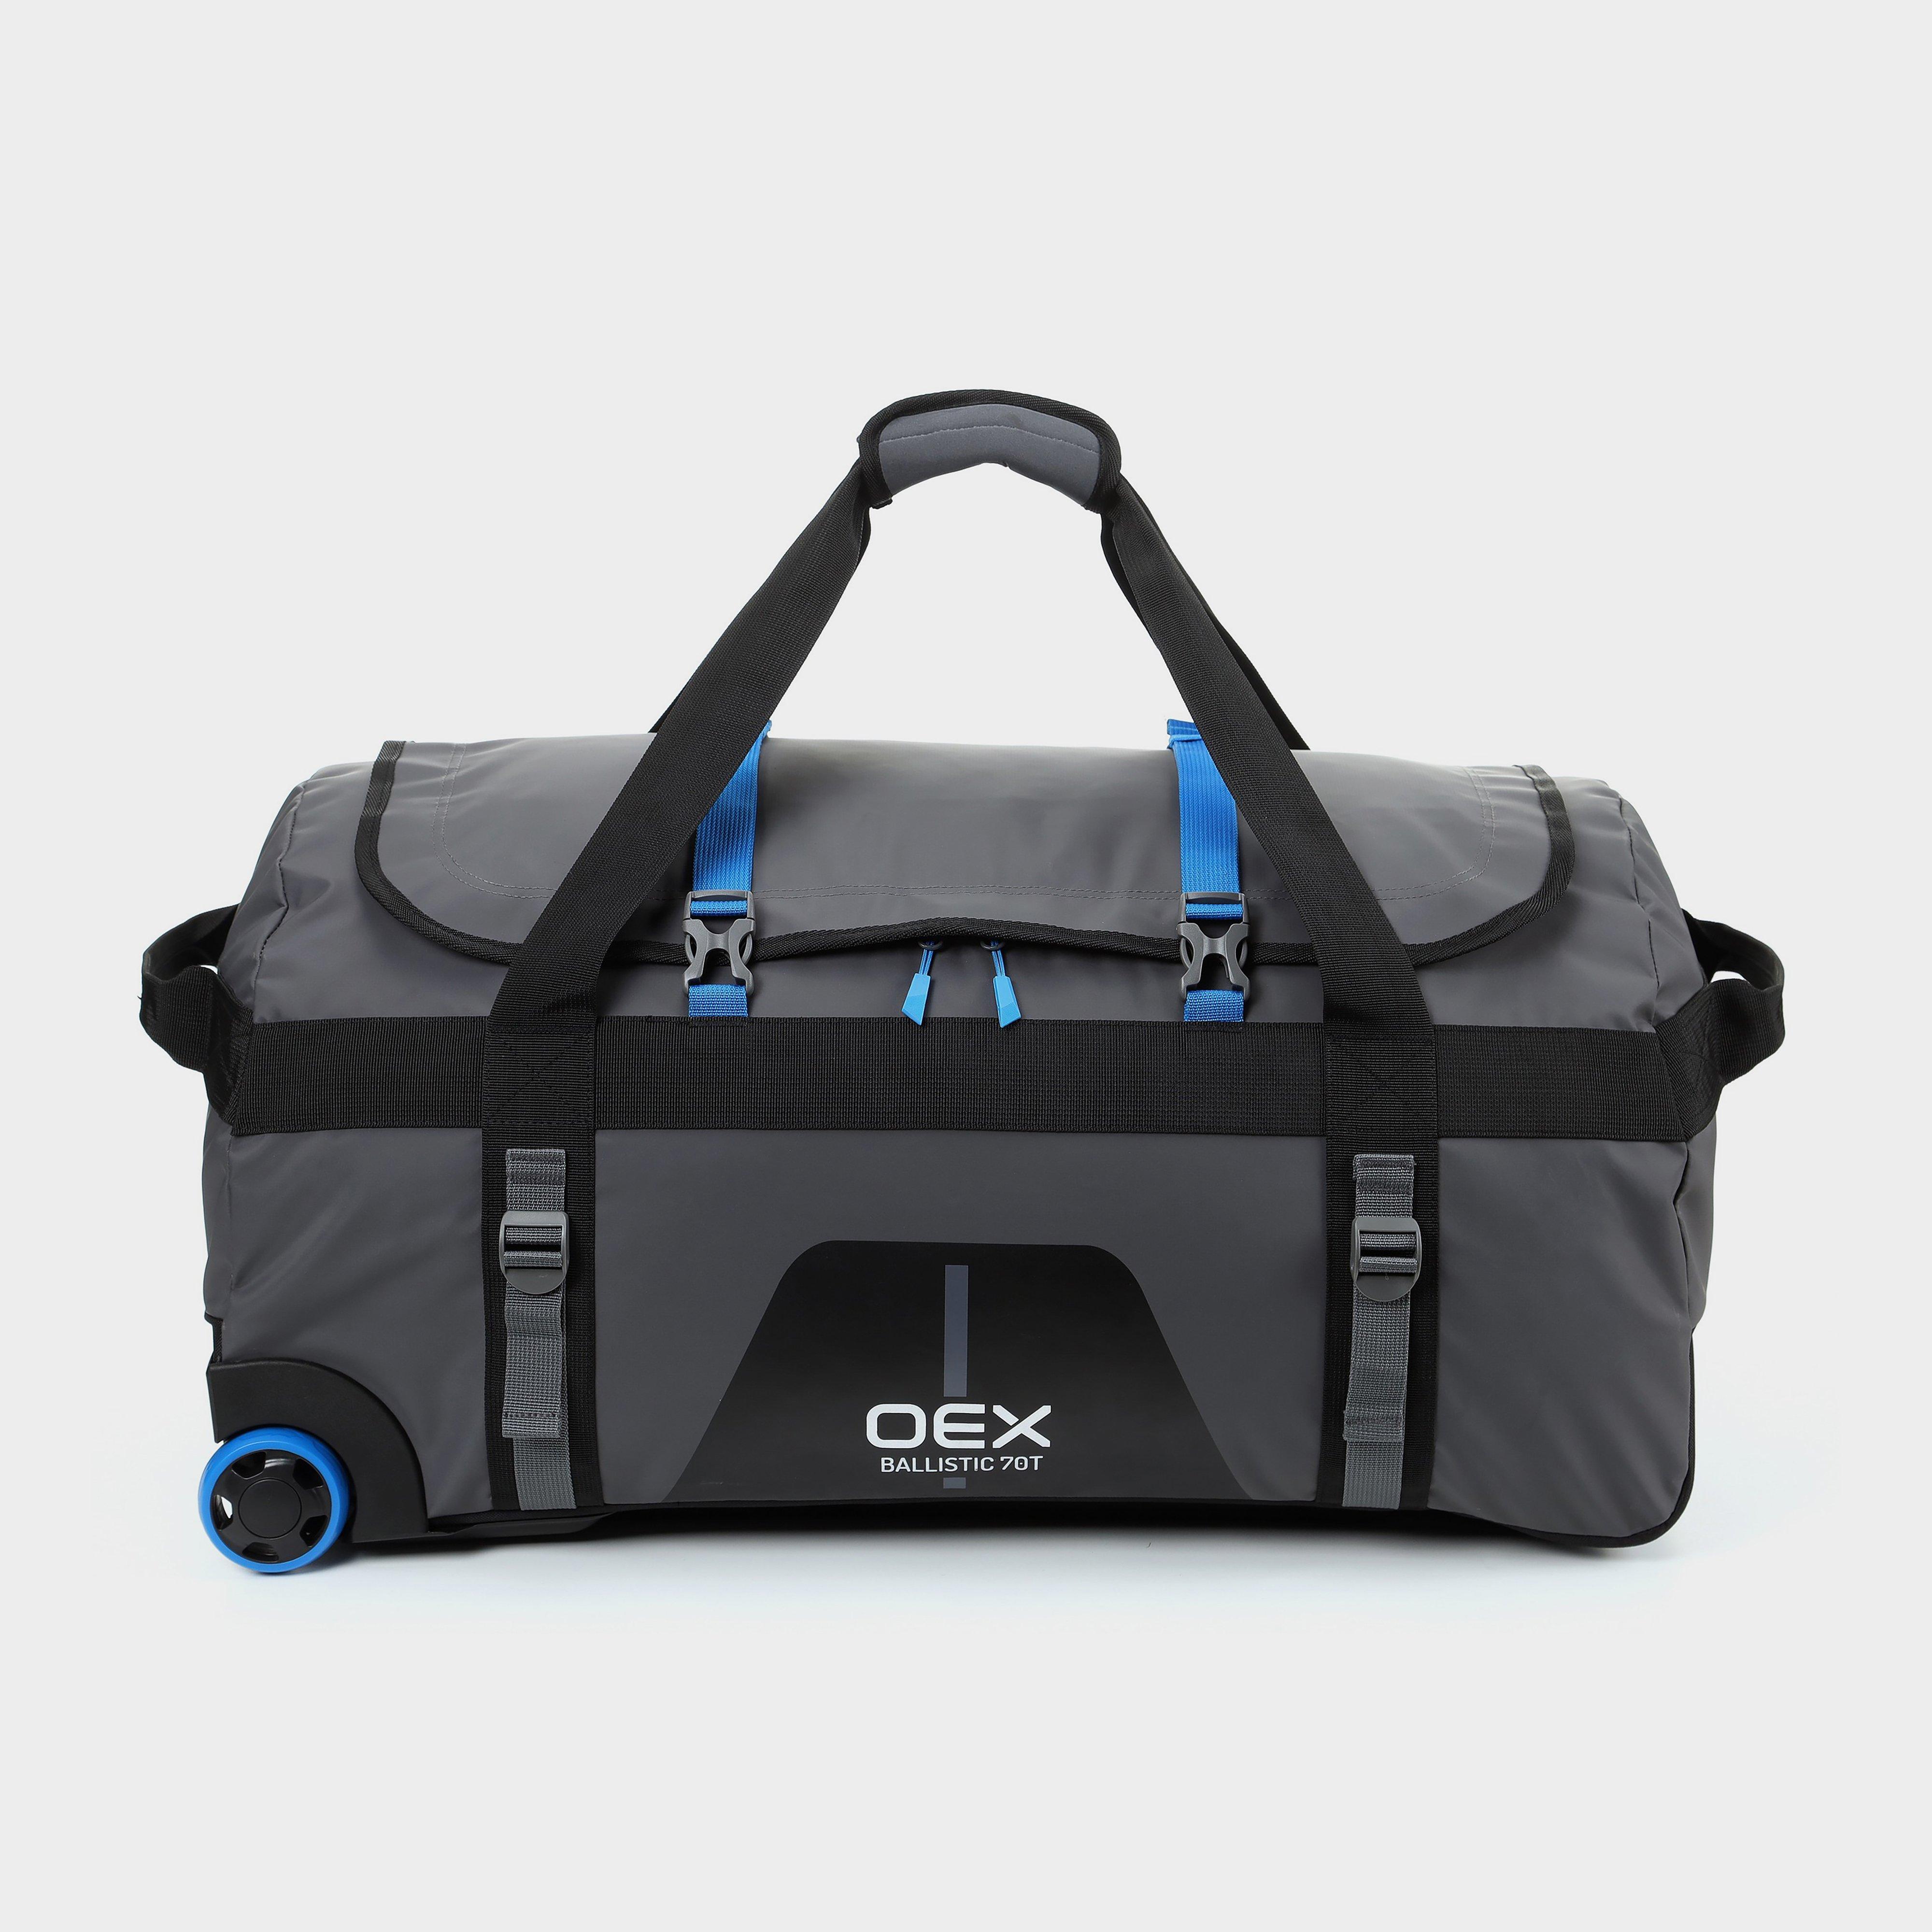 Oex Ballistic 70t Travel Bag - Grey/blue  Grey/blue